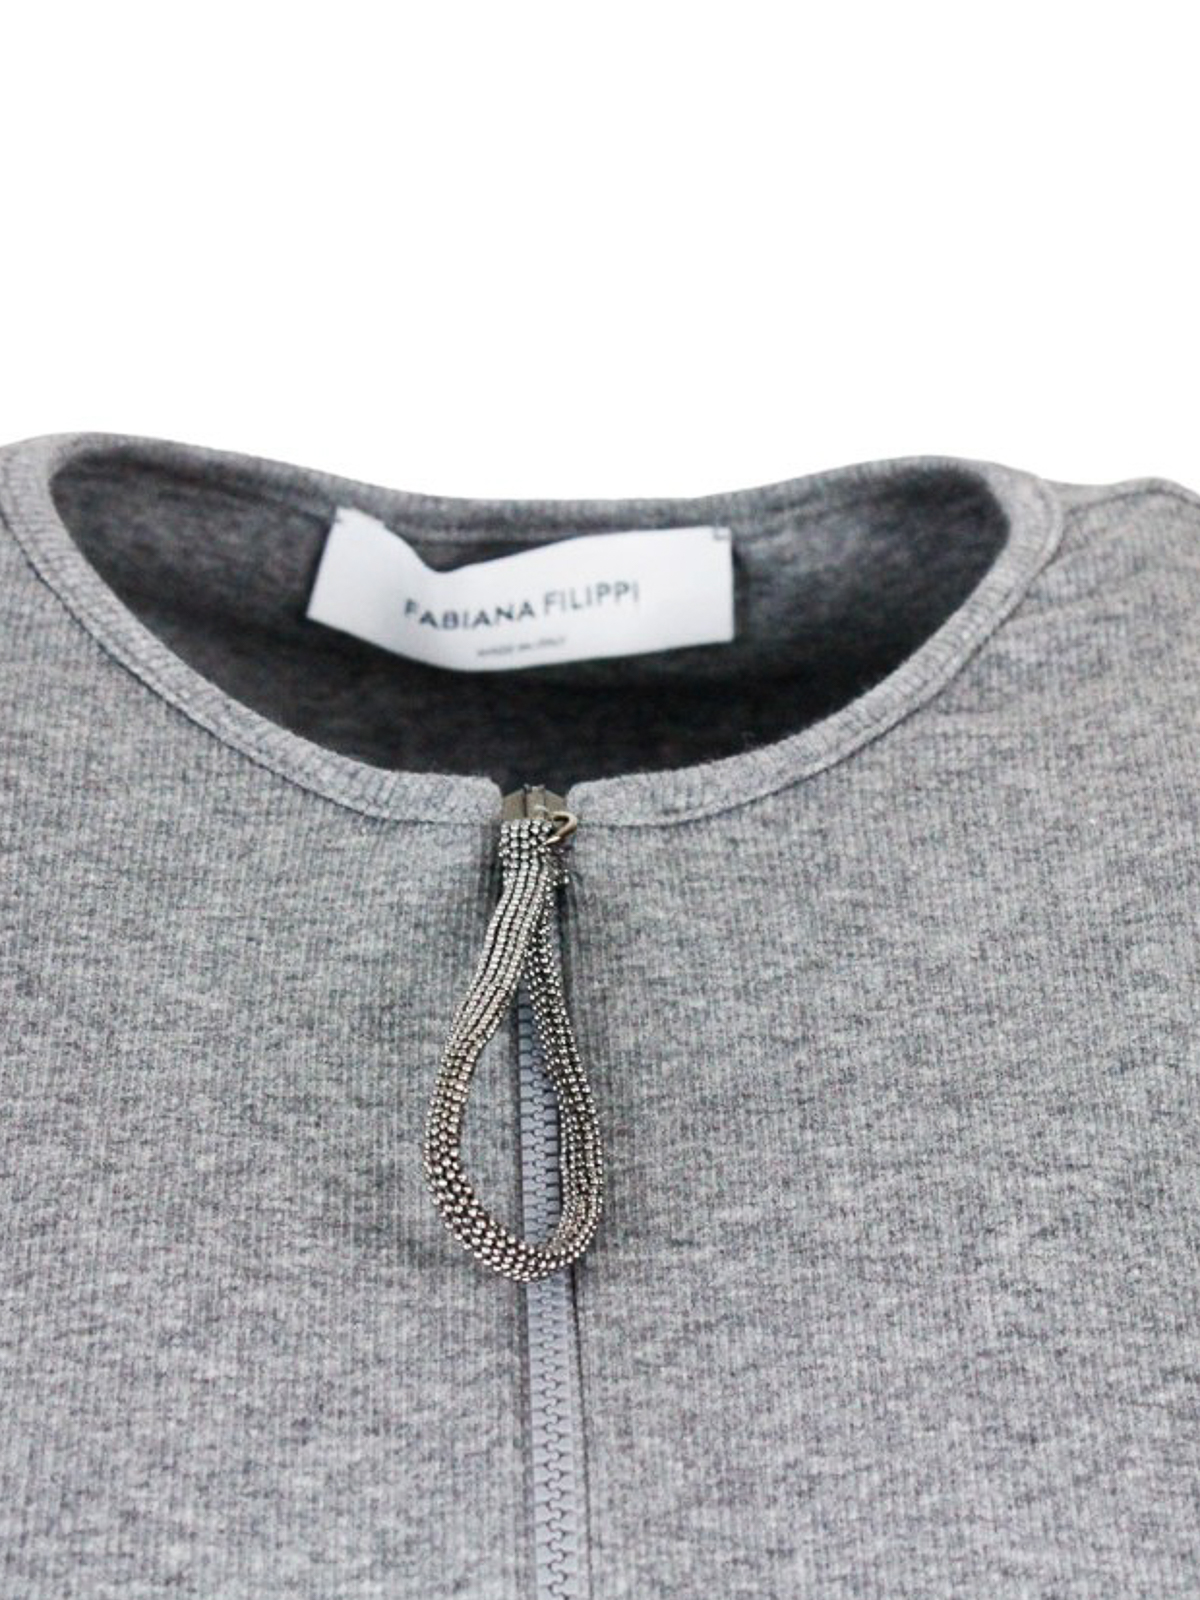 Shop Fabiana Filippi Camiseta - Gris In Grey